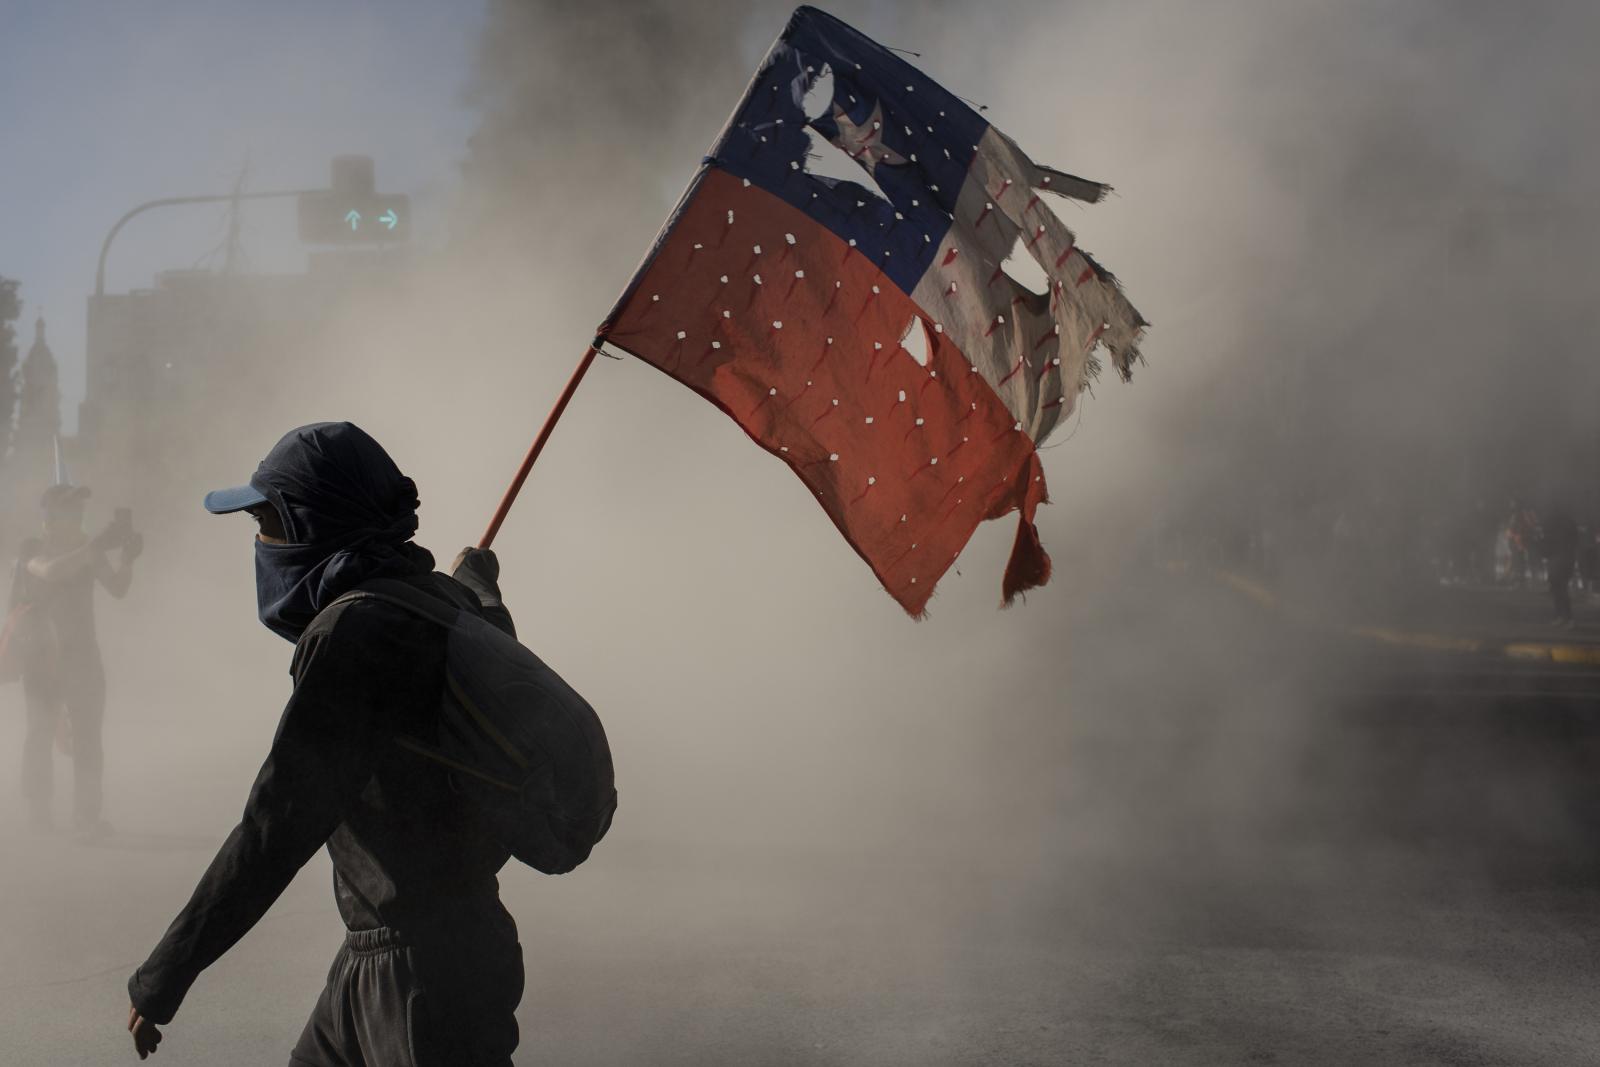 Image from CHILE: From politics to social unrest. - Nueva York Estados Unidos